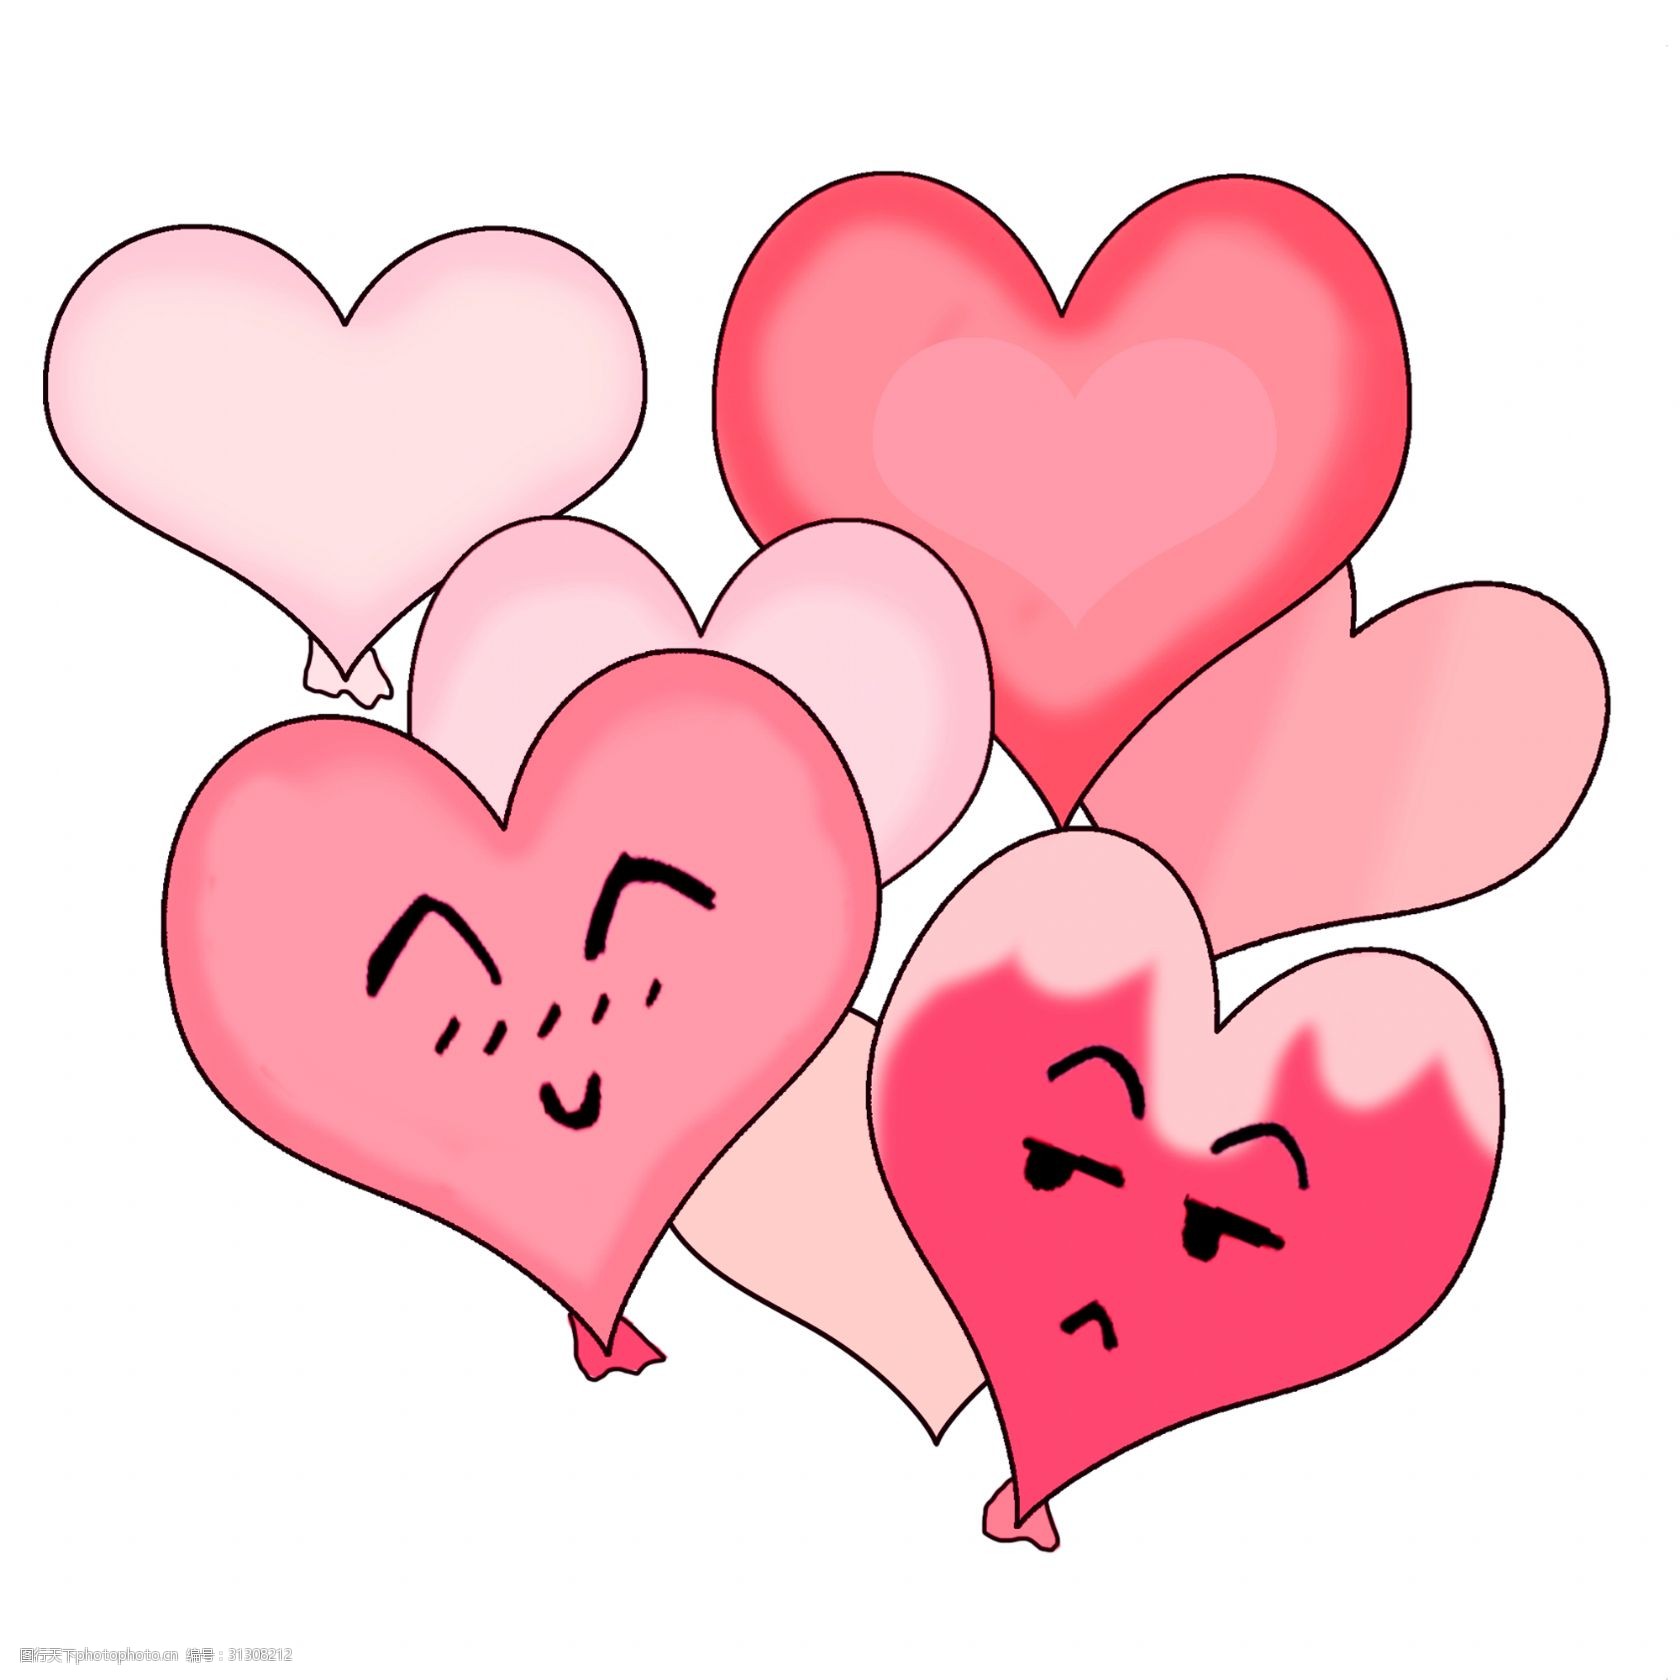 关键词:爱心卡通气球插画 卡通气球 可爱的气球 浪漫 红色气球 心形